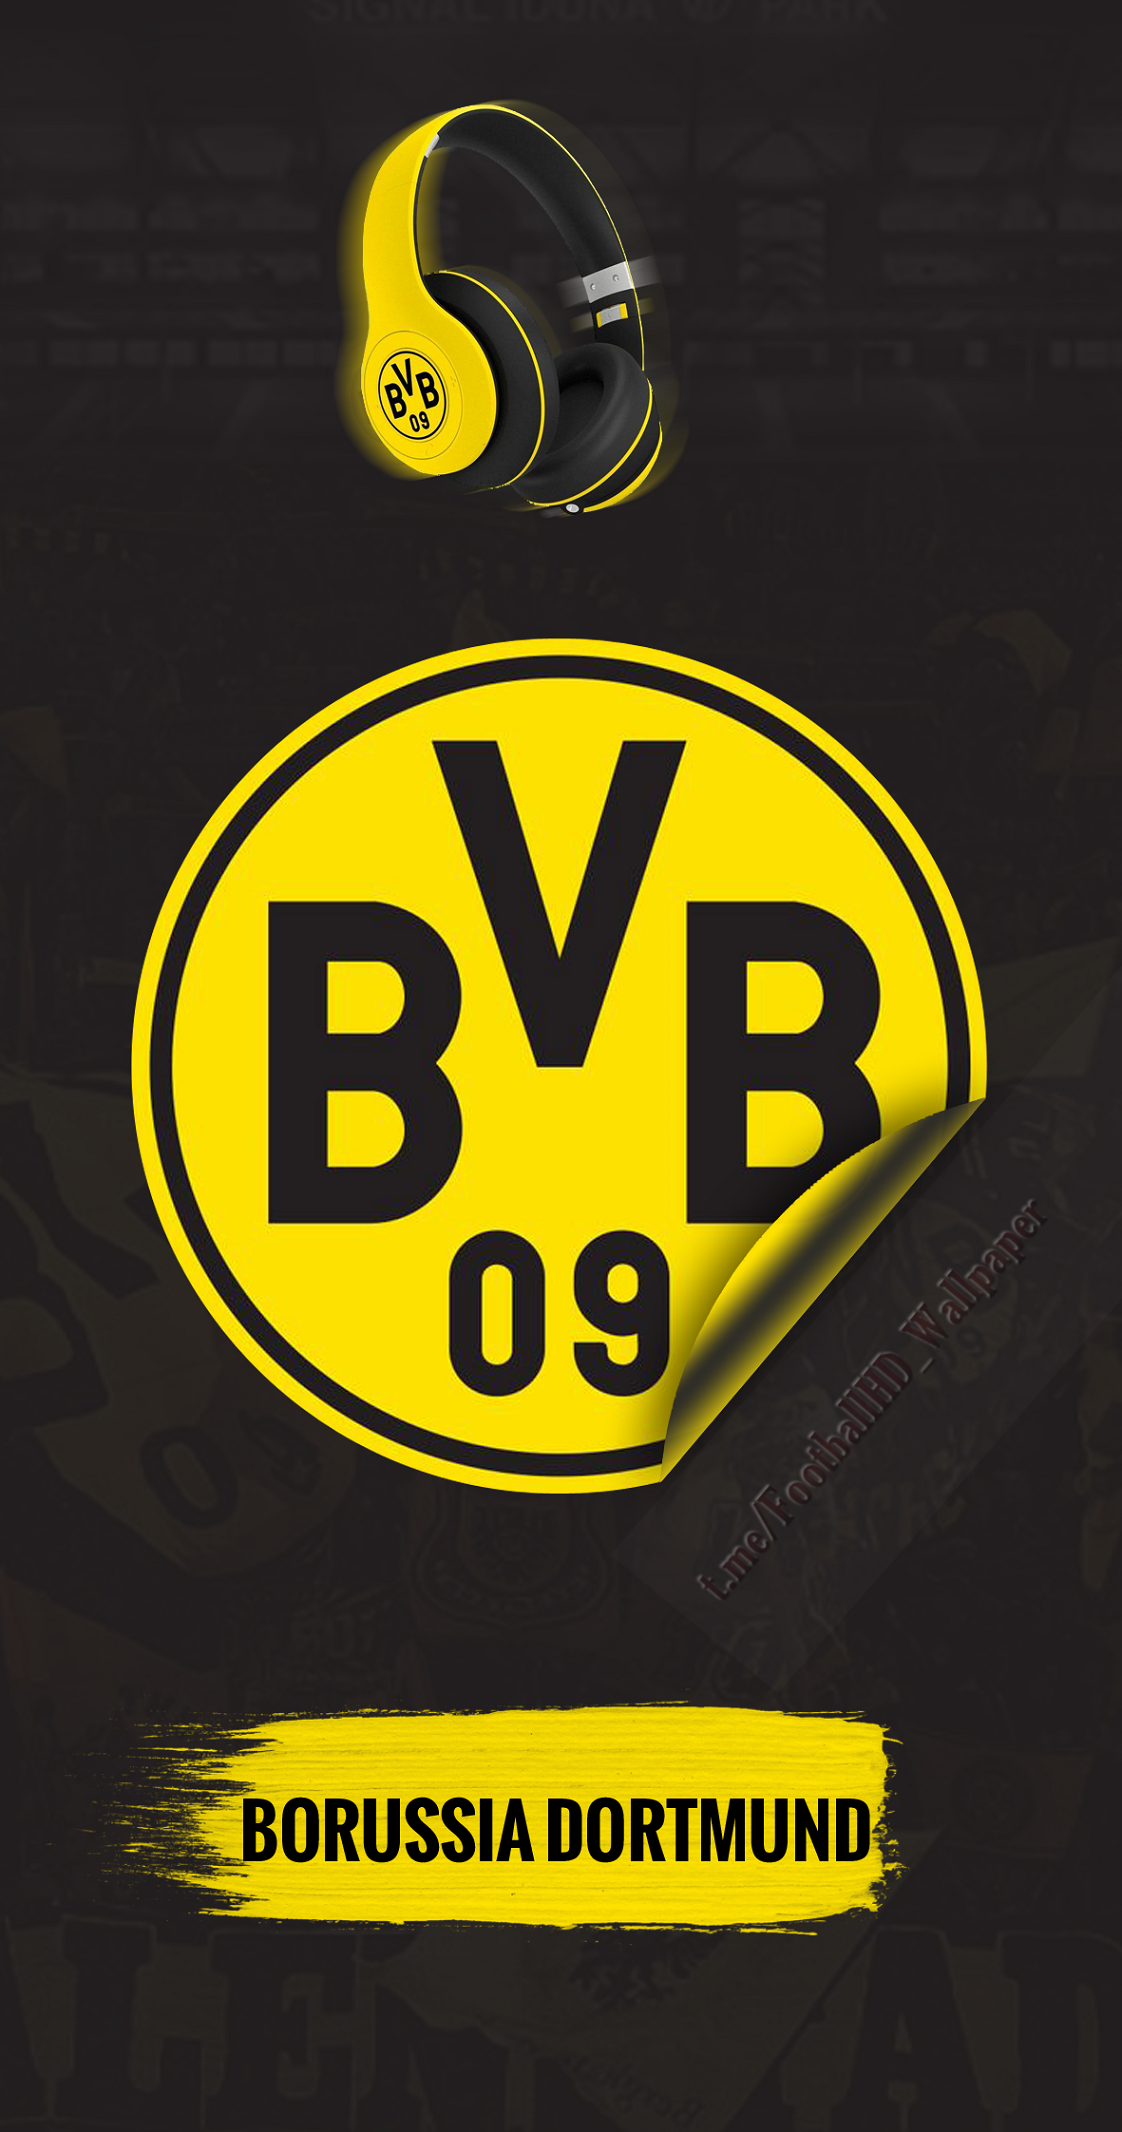 BVB 09. Football wallpaper, Football logo, Football